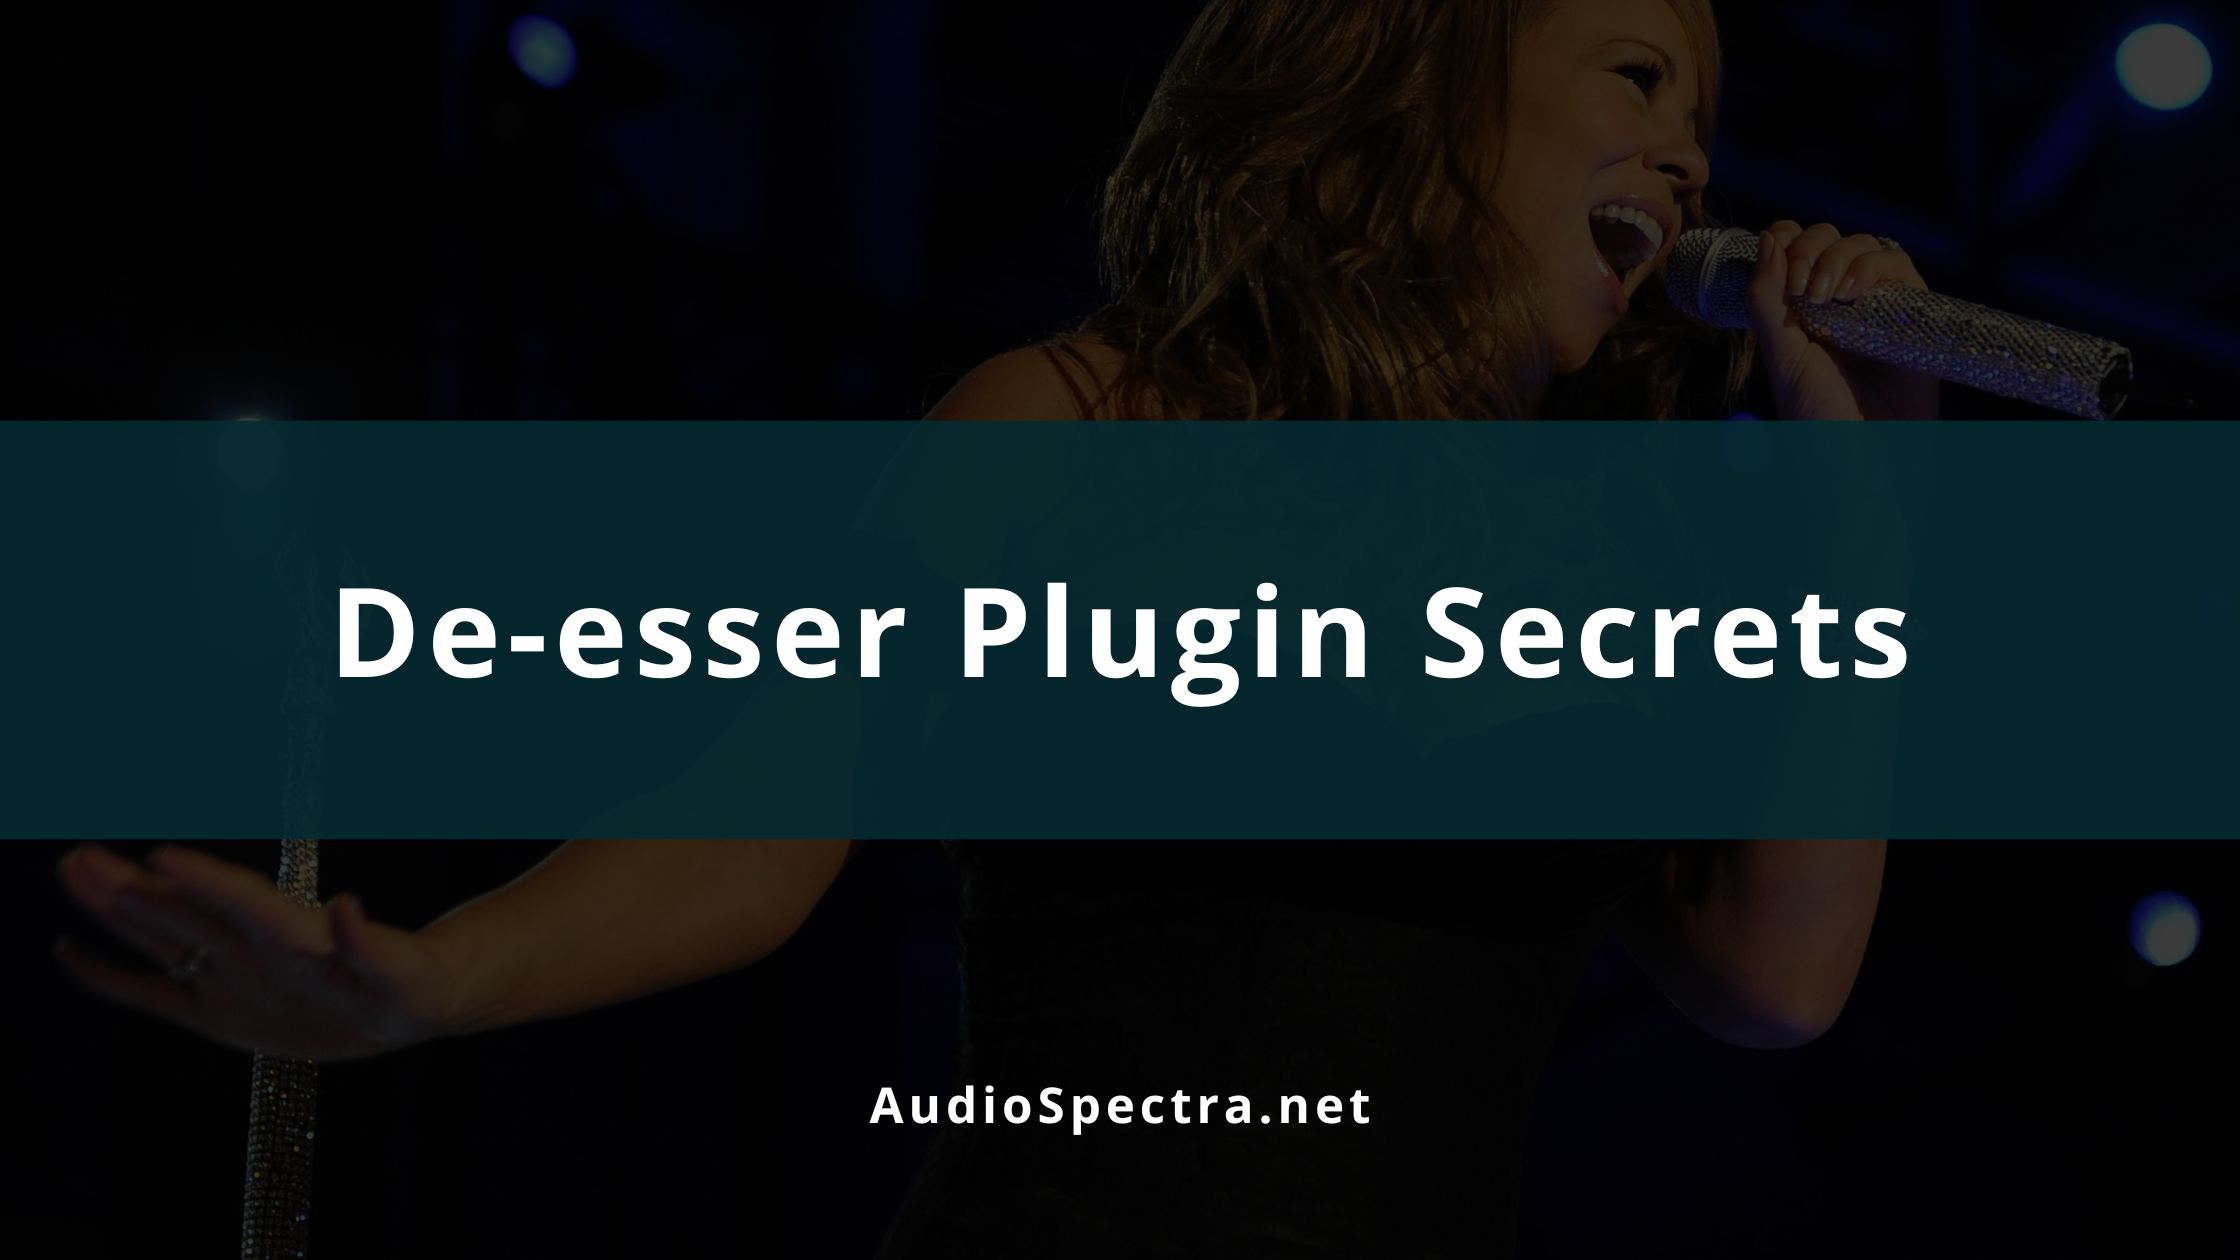 How to Use a De-esser Plugin